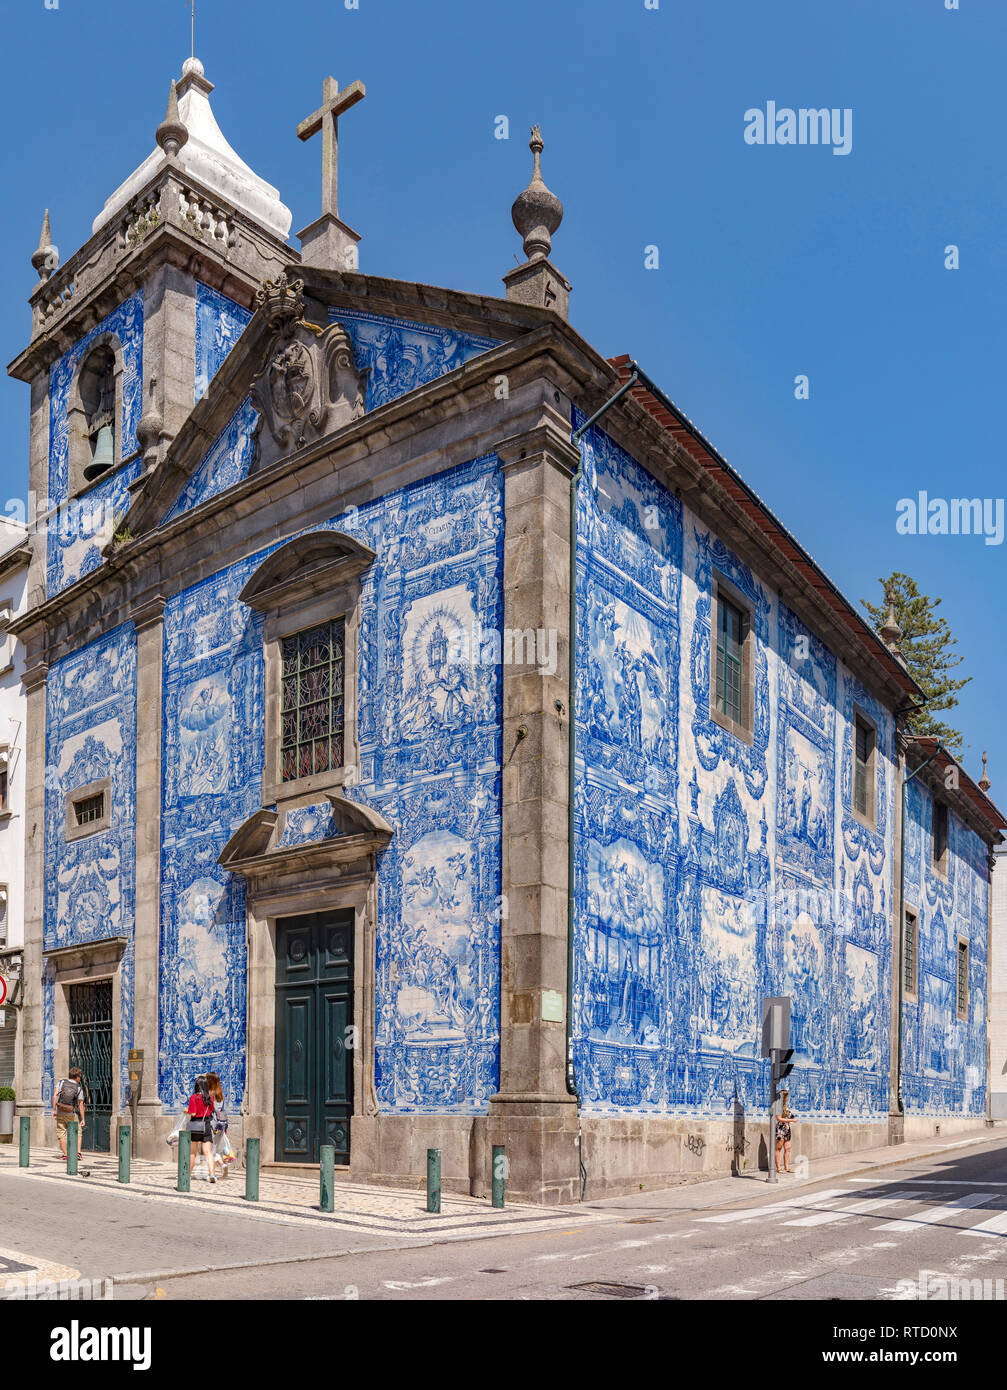 Azulejos, blue tiles of the Capela Das Almas, Porto, Portugal Stock Photo -  Alamy